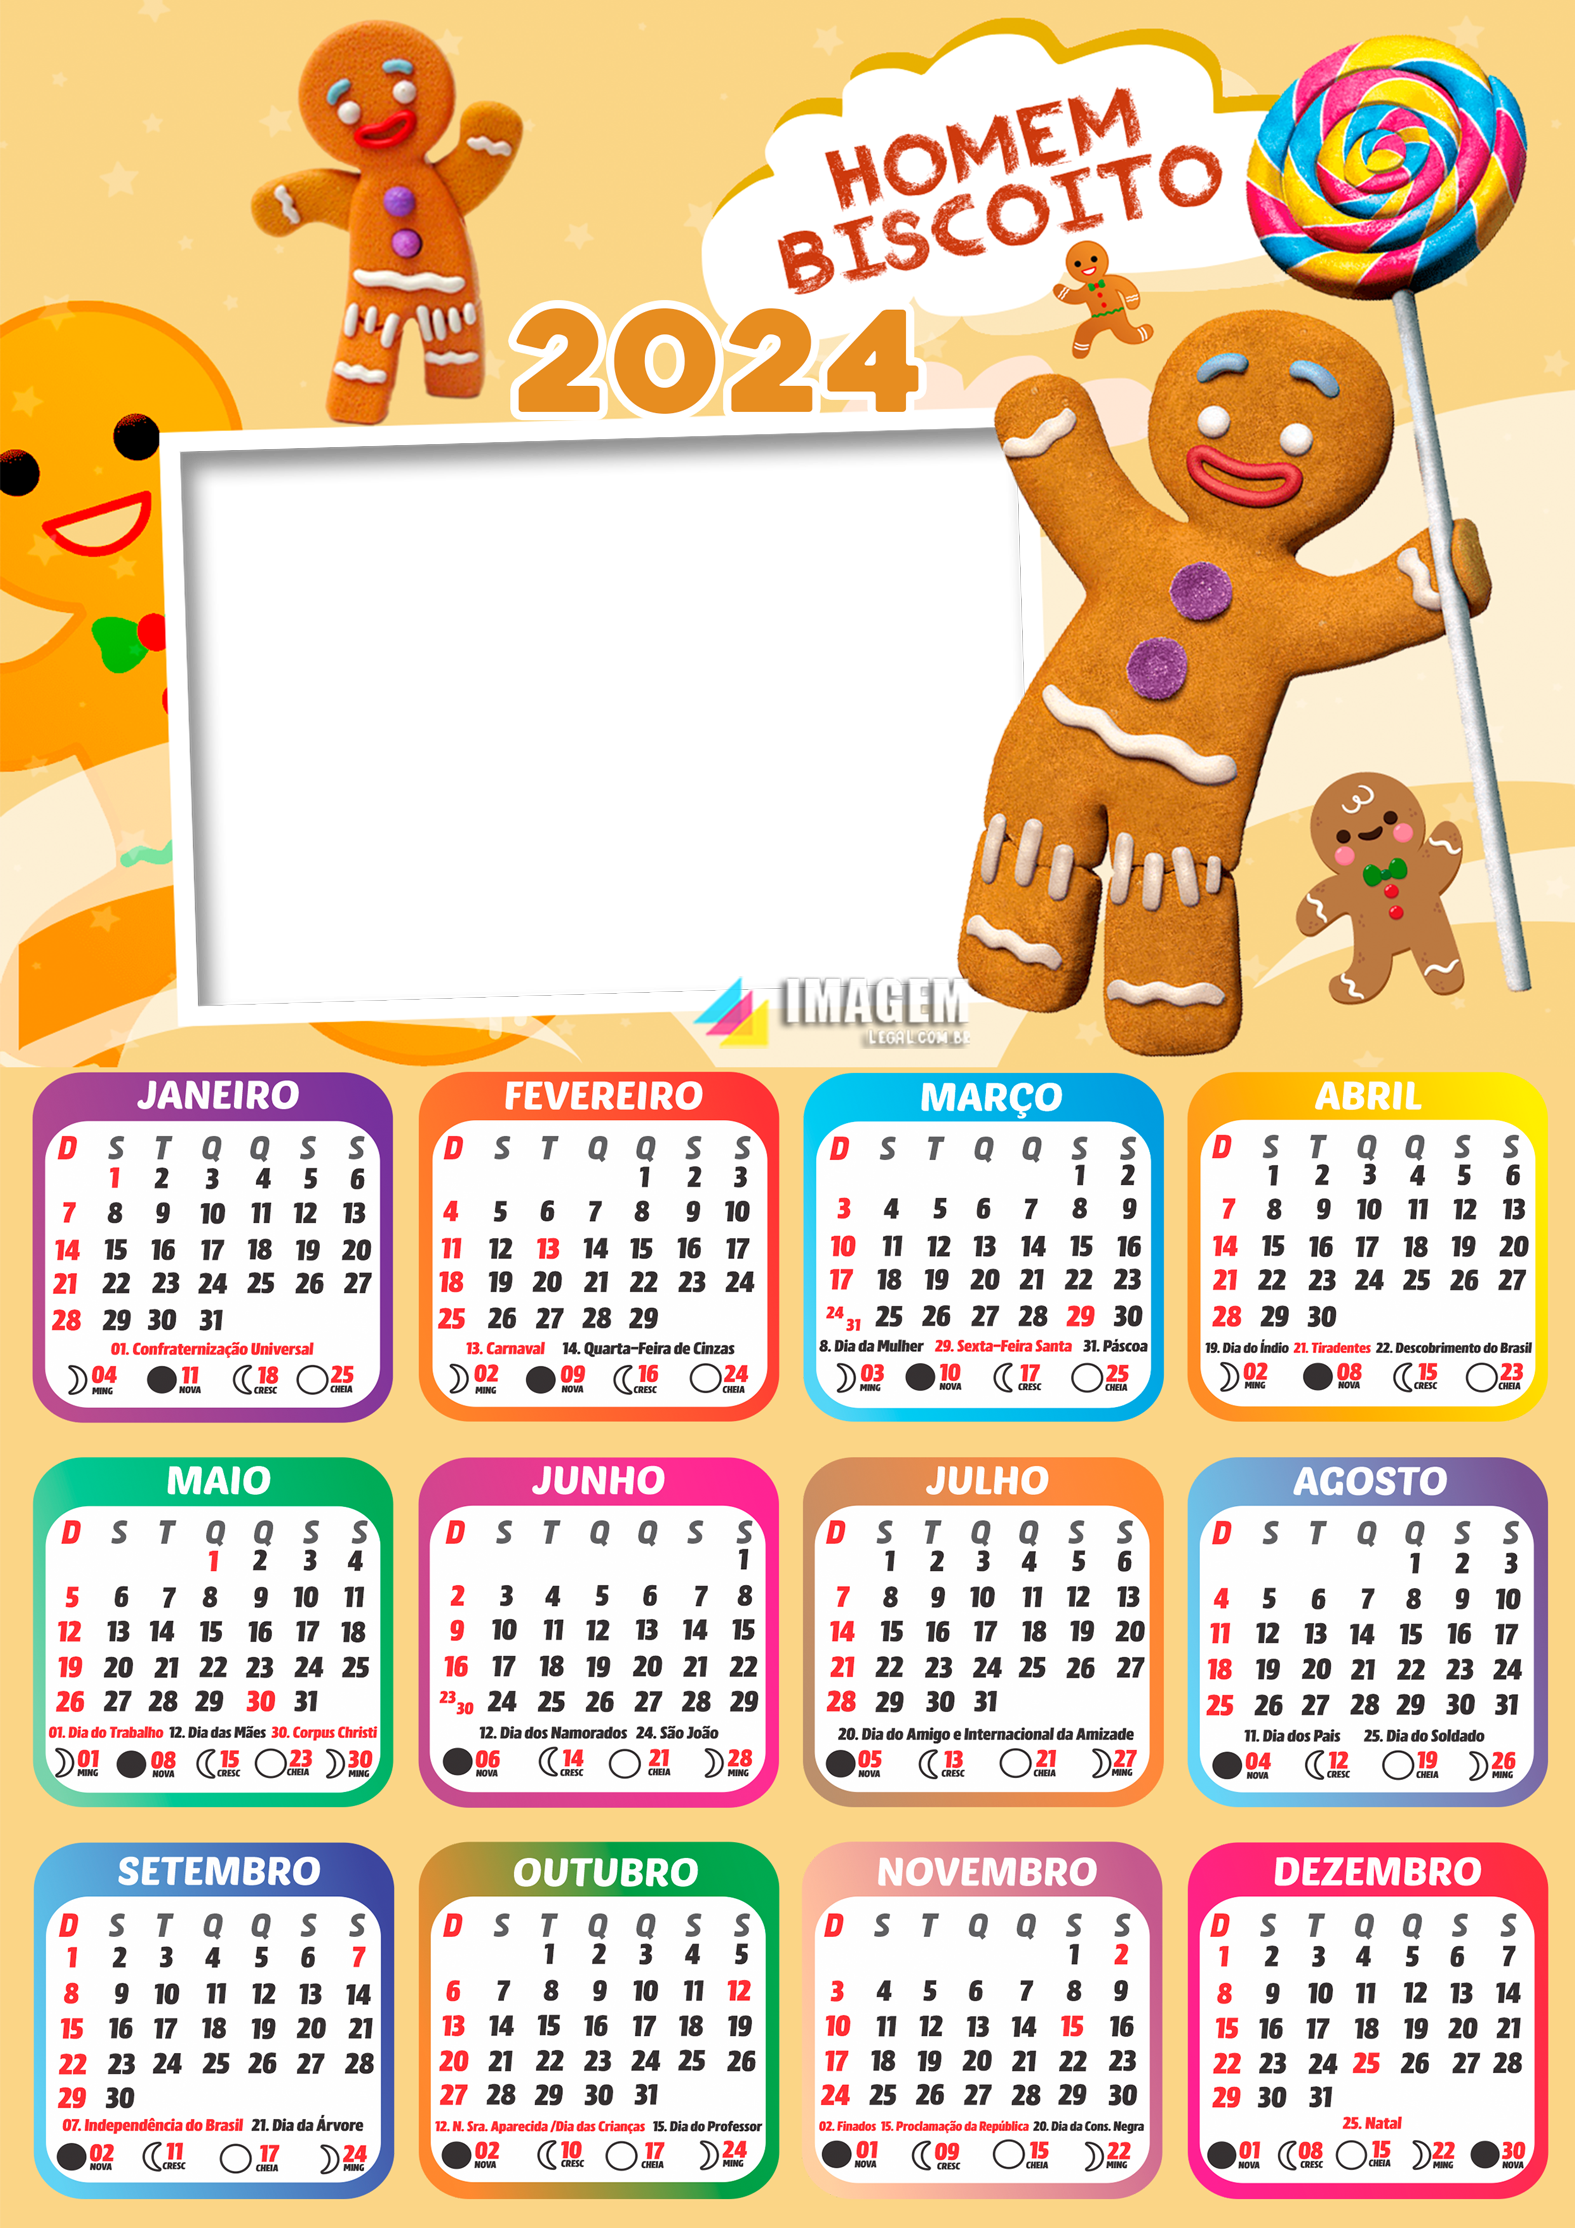 Calendário 2024 Biscoitinho do Shrek Moldura Foto Imagem Legal